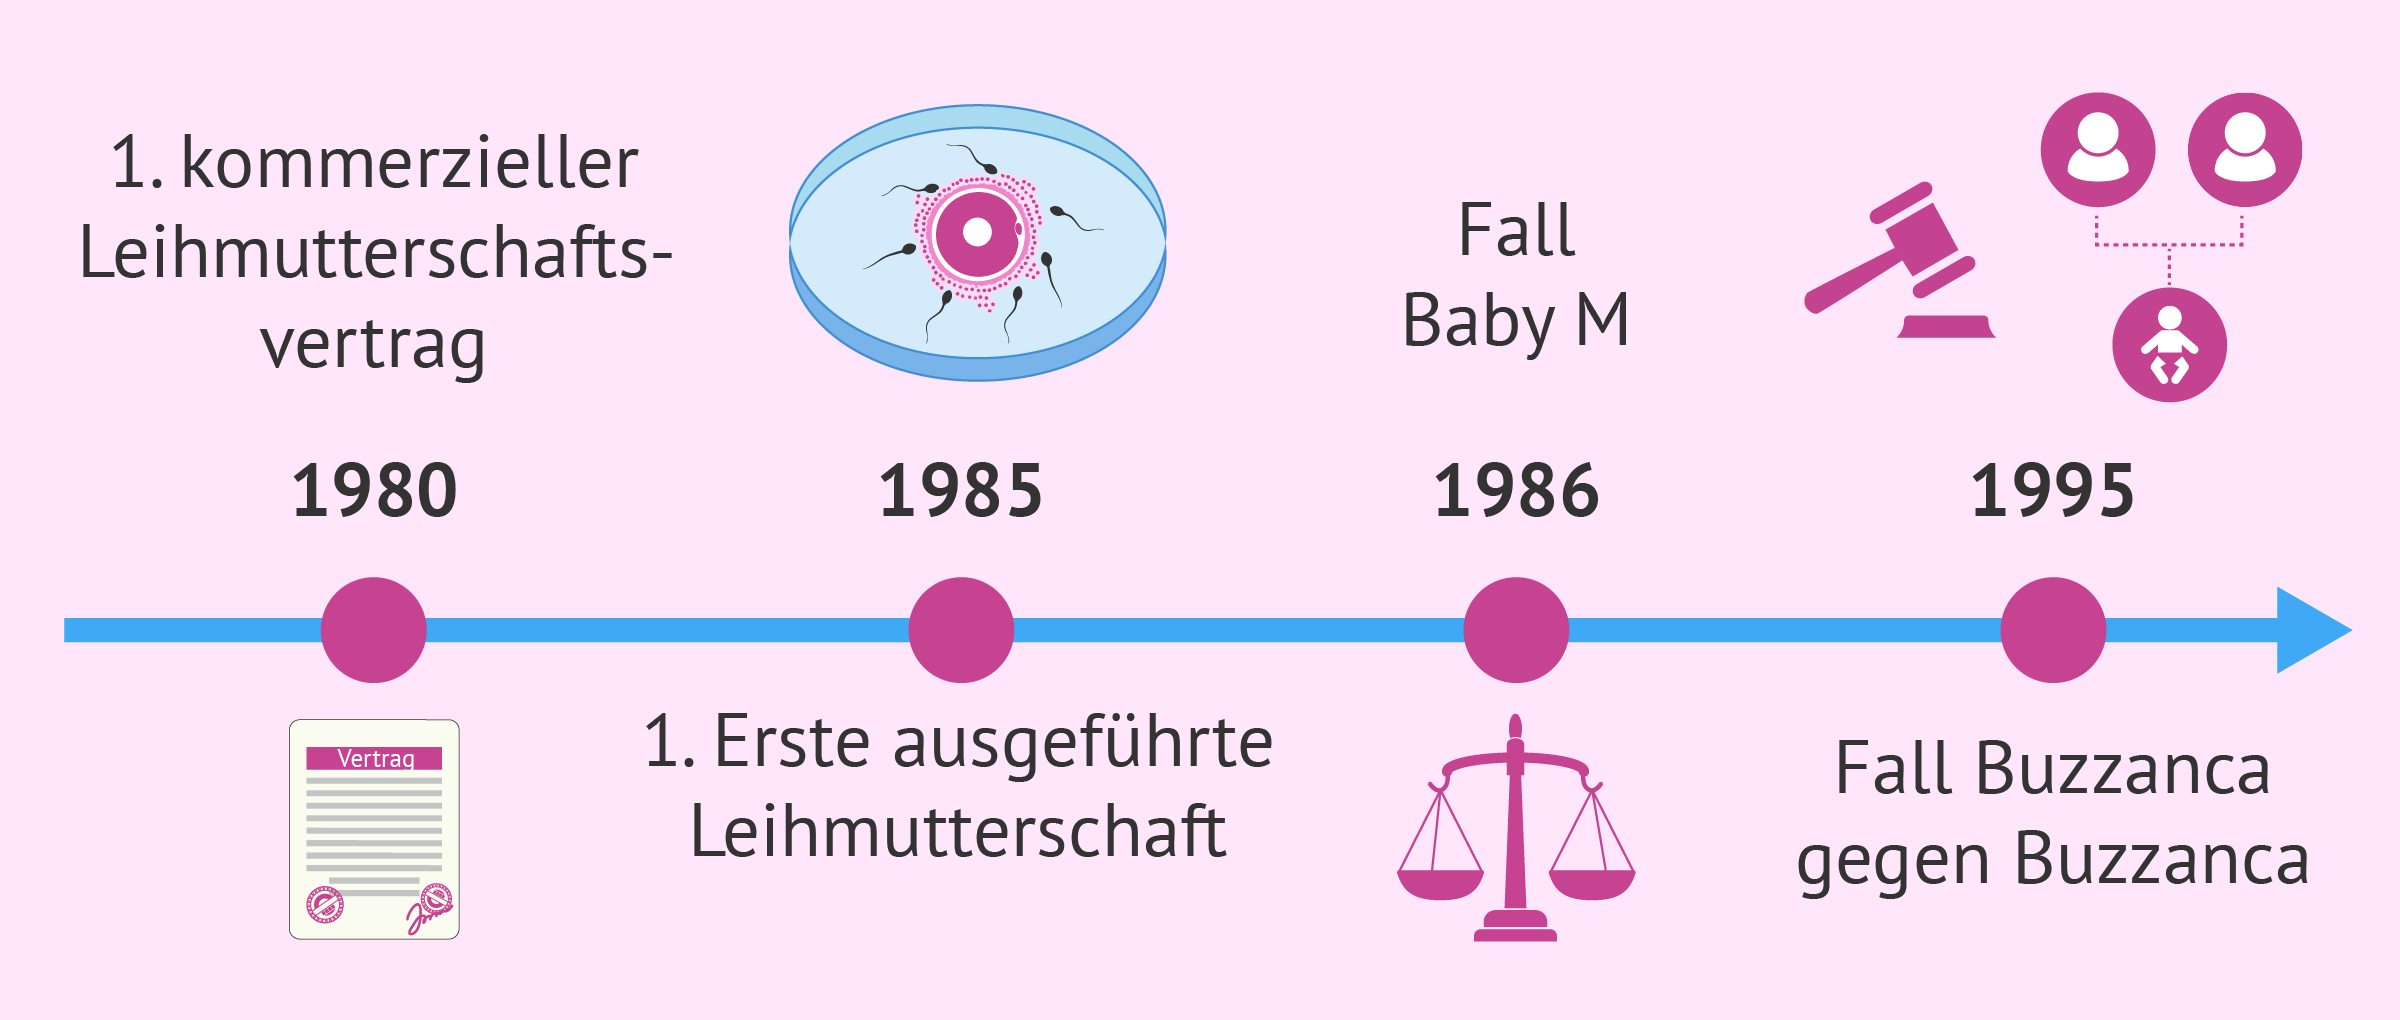 Geschichte der Leihmutterschaft